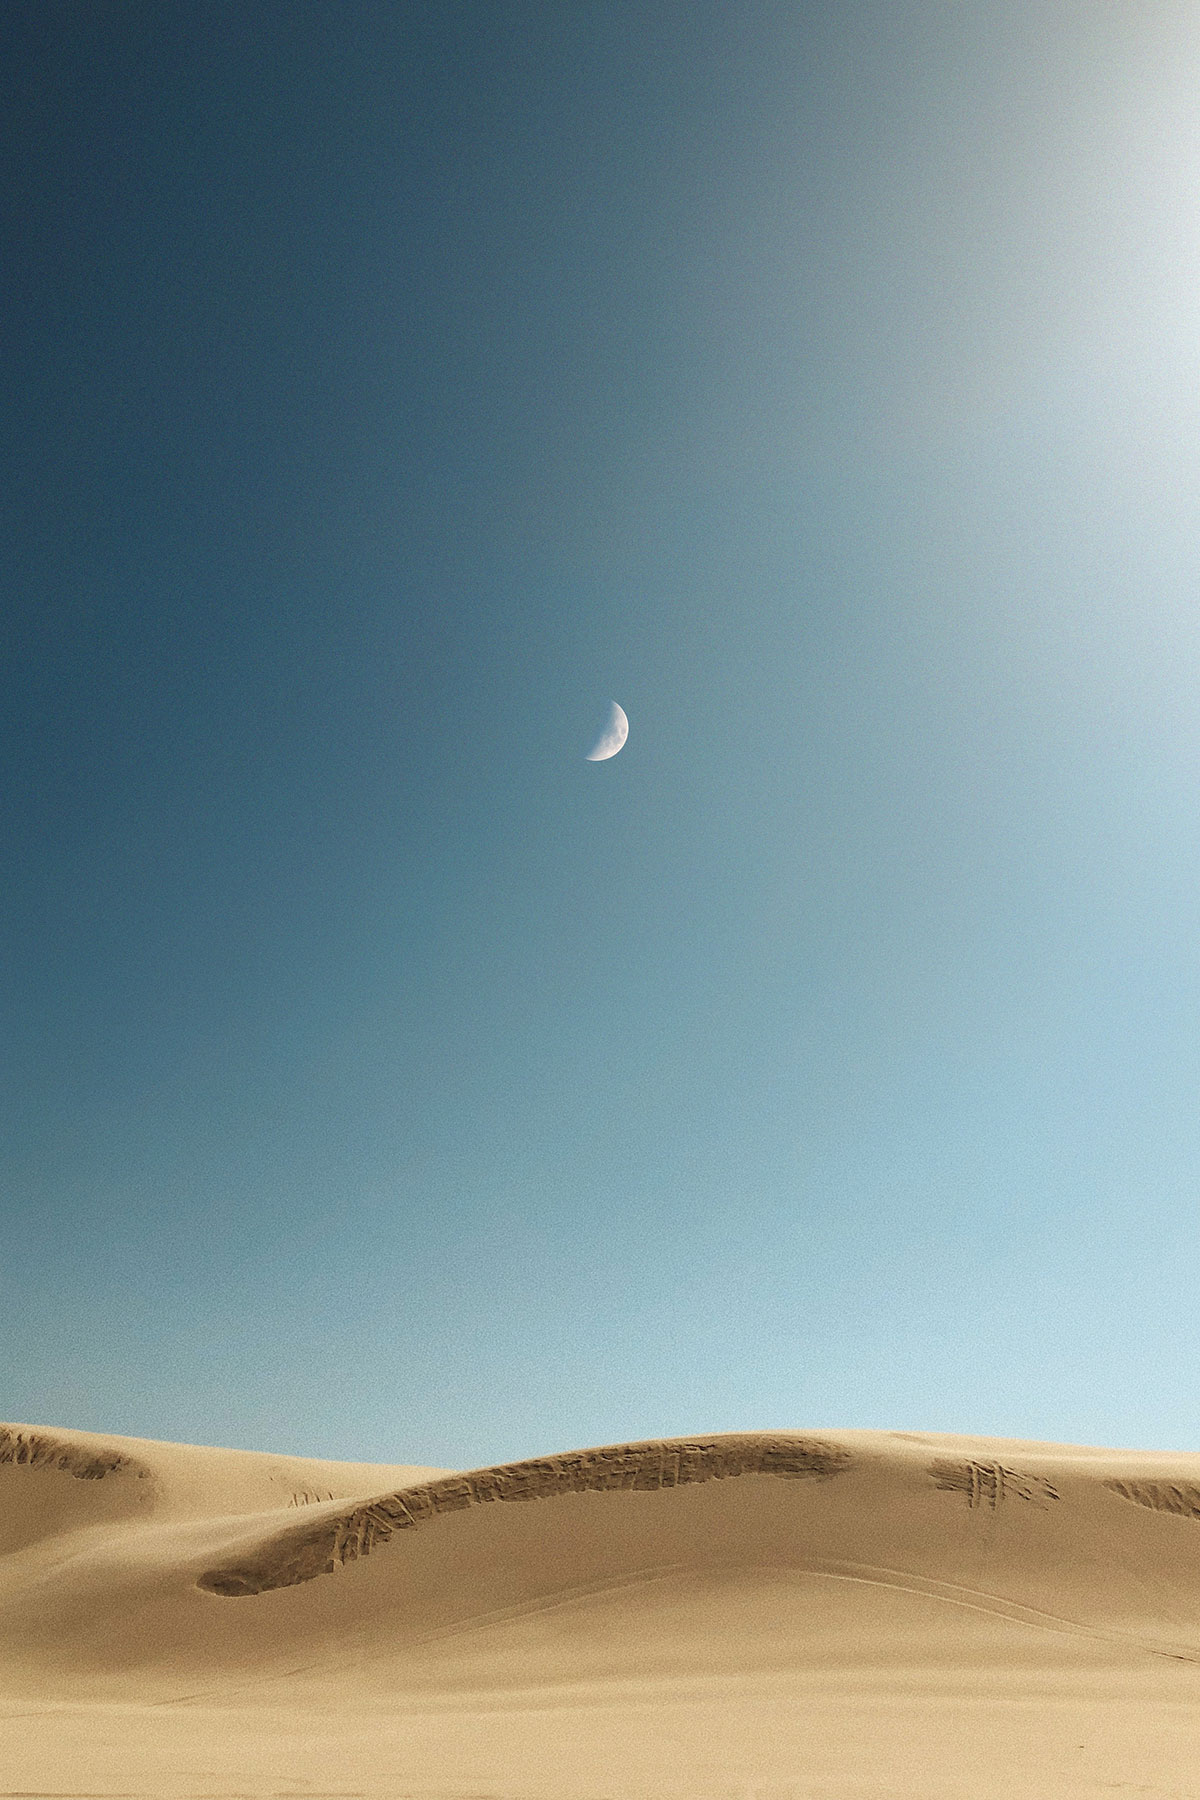 Moon over desert